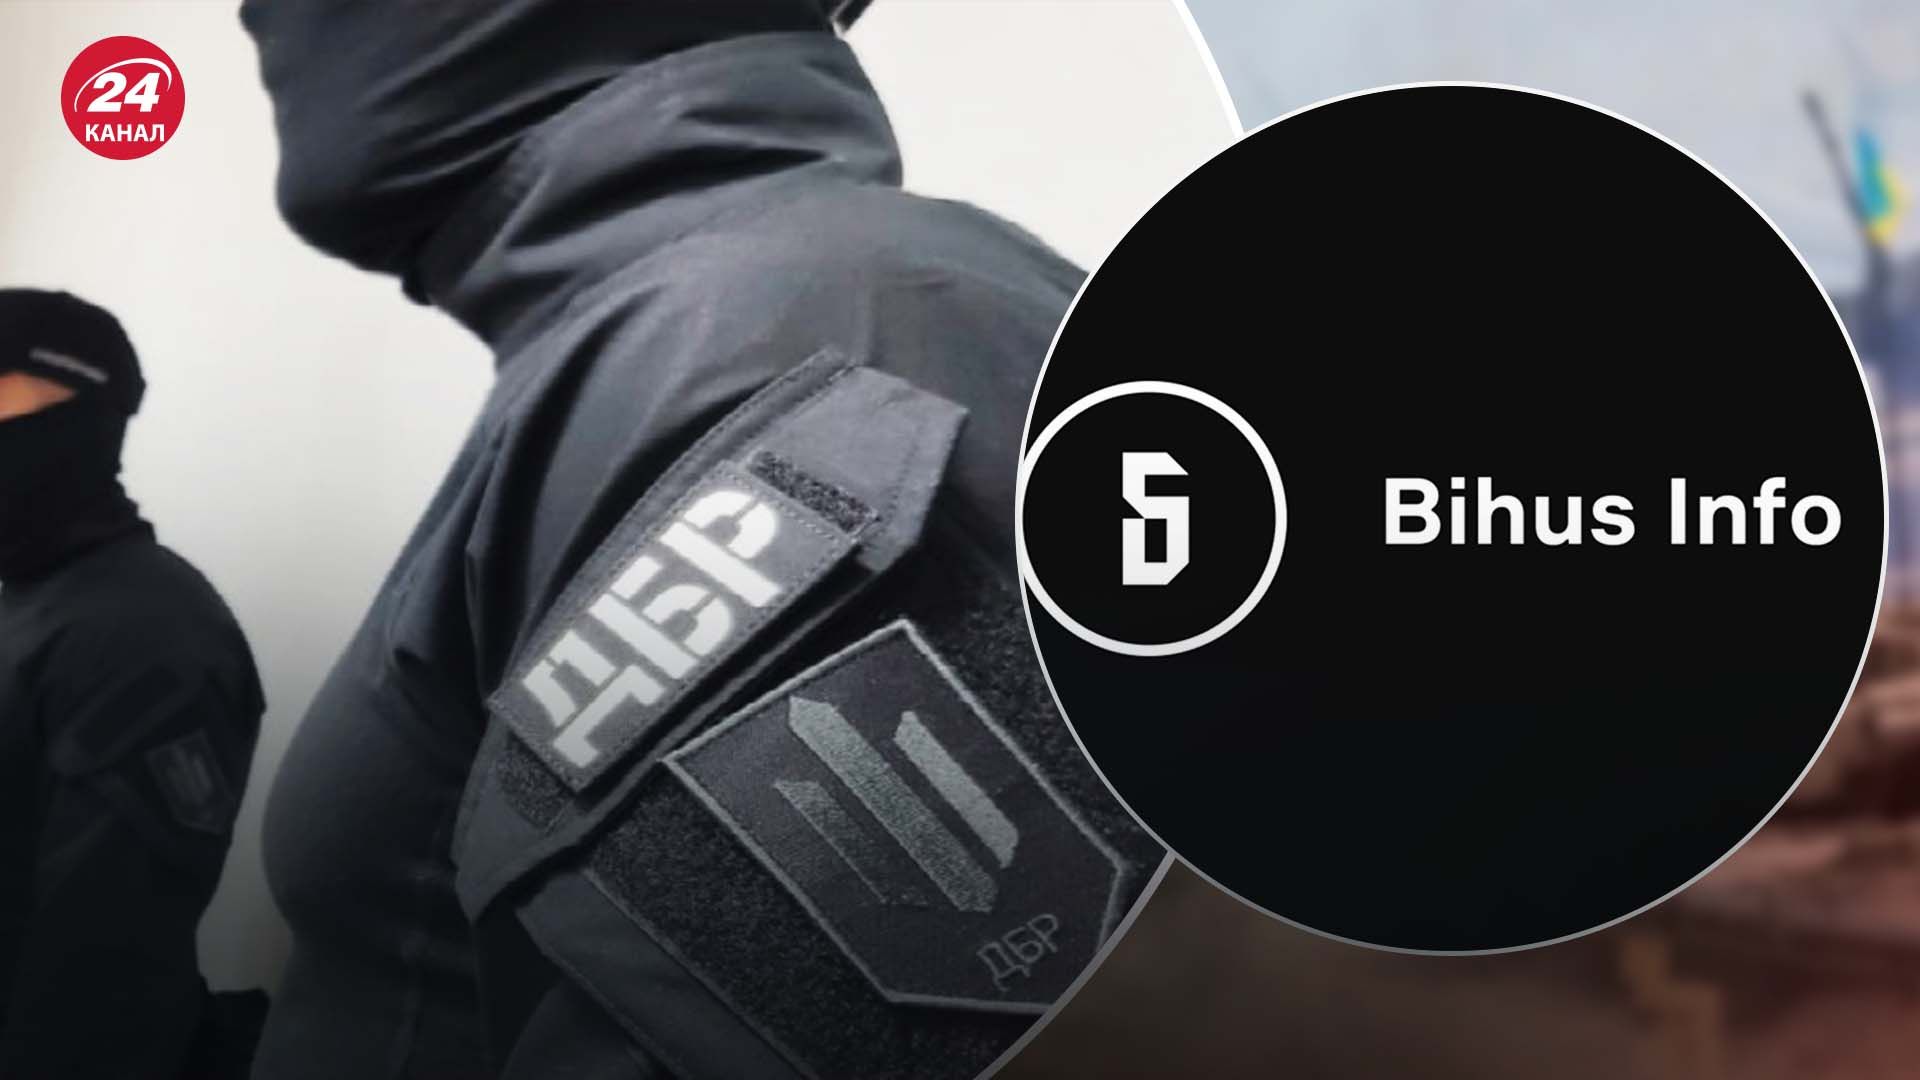 ГБР проведет досудебное расследование по делу о слежке за Bihus.infо